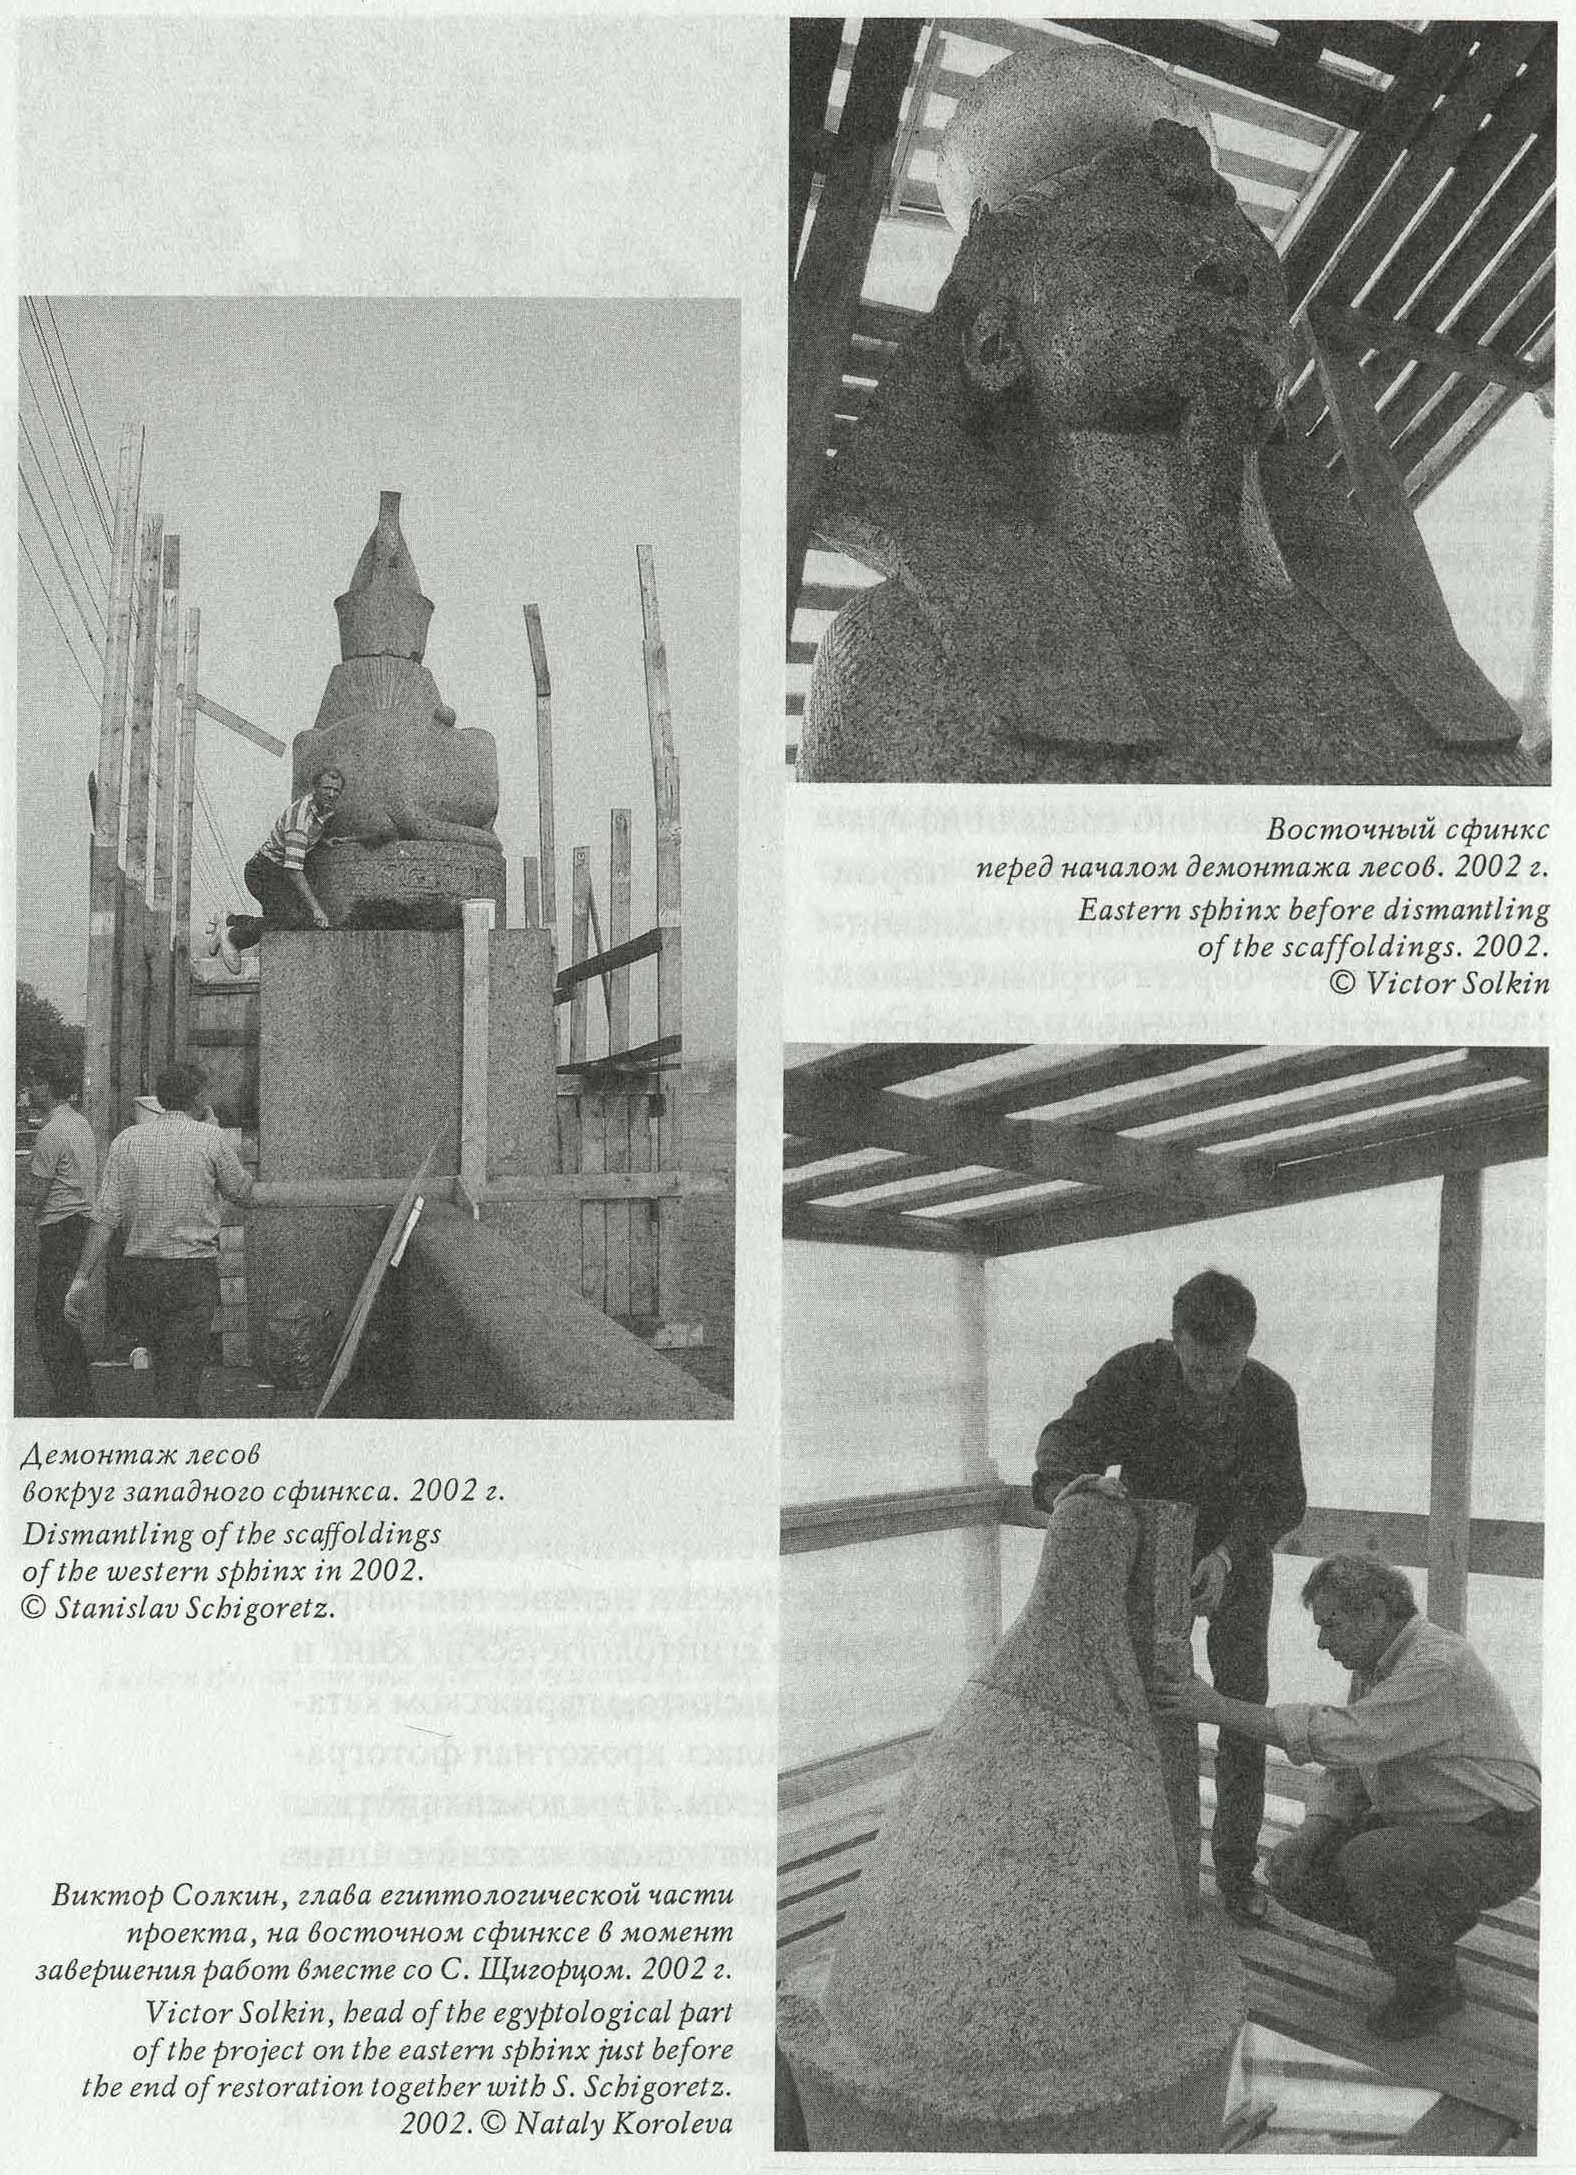 Демонтаж лесов вокруг западного сфинкса. 2002 г. Dismantling of the scaffoldings of the western sphinx in 2002. © Stanislav Schigoretz.